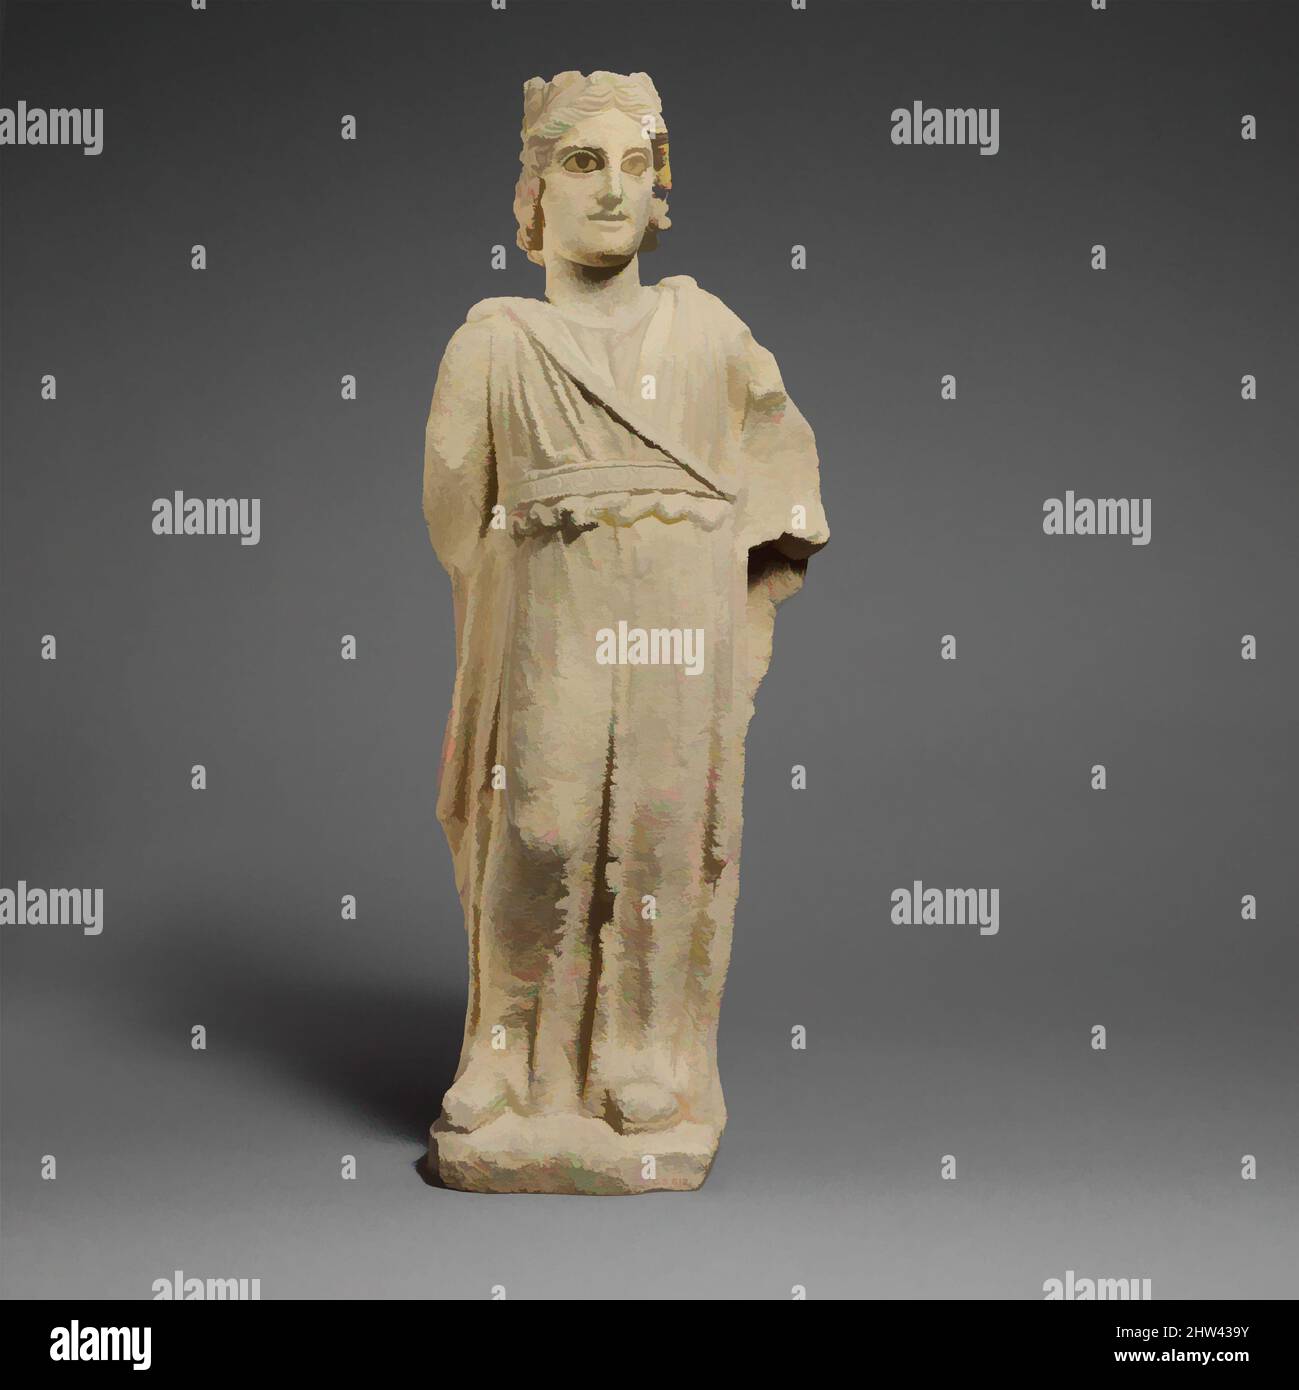 Kunst inspiriert von der Kalksteinstatue von Apollo, Hellenistic, ca. 3..–1.. Jahrhundert v. Chr., Zypern, Kalkstein, insgesamt: 21 x 8 Zoll (53,3 x 20,3 cm), Steinskulptur, die Figur kann als der gott Apollo identifiziert werden. Seine Frisur, mit einem Knoten über der Stirn, ist die von Apollo Lykeios, und er, Classic Works modernisiert von Artotop mit einem Schuss Moderne. Formen, Farbe und Wert, auffällige visuelle Wirkung auf Kunst. Emotionen durch Freiheit von Kunstwerken auf zeitgemäße Weise. Eine zeitlose Botschaft, die eine wild kreative neue Richtung verfolgt. Künstler, die sich dem digitalen Medium zuwenden und die Artotop NFT erschaffen Stockfoto